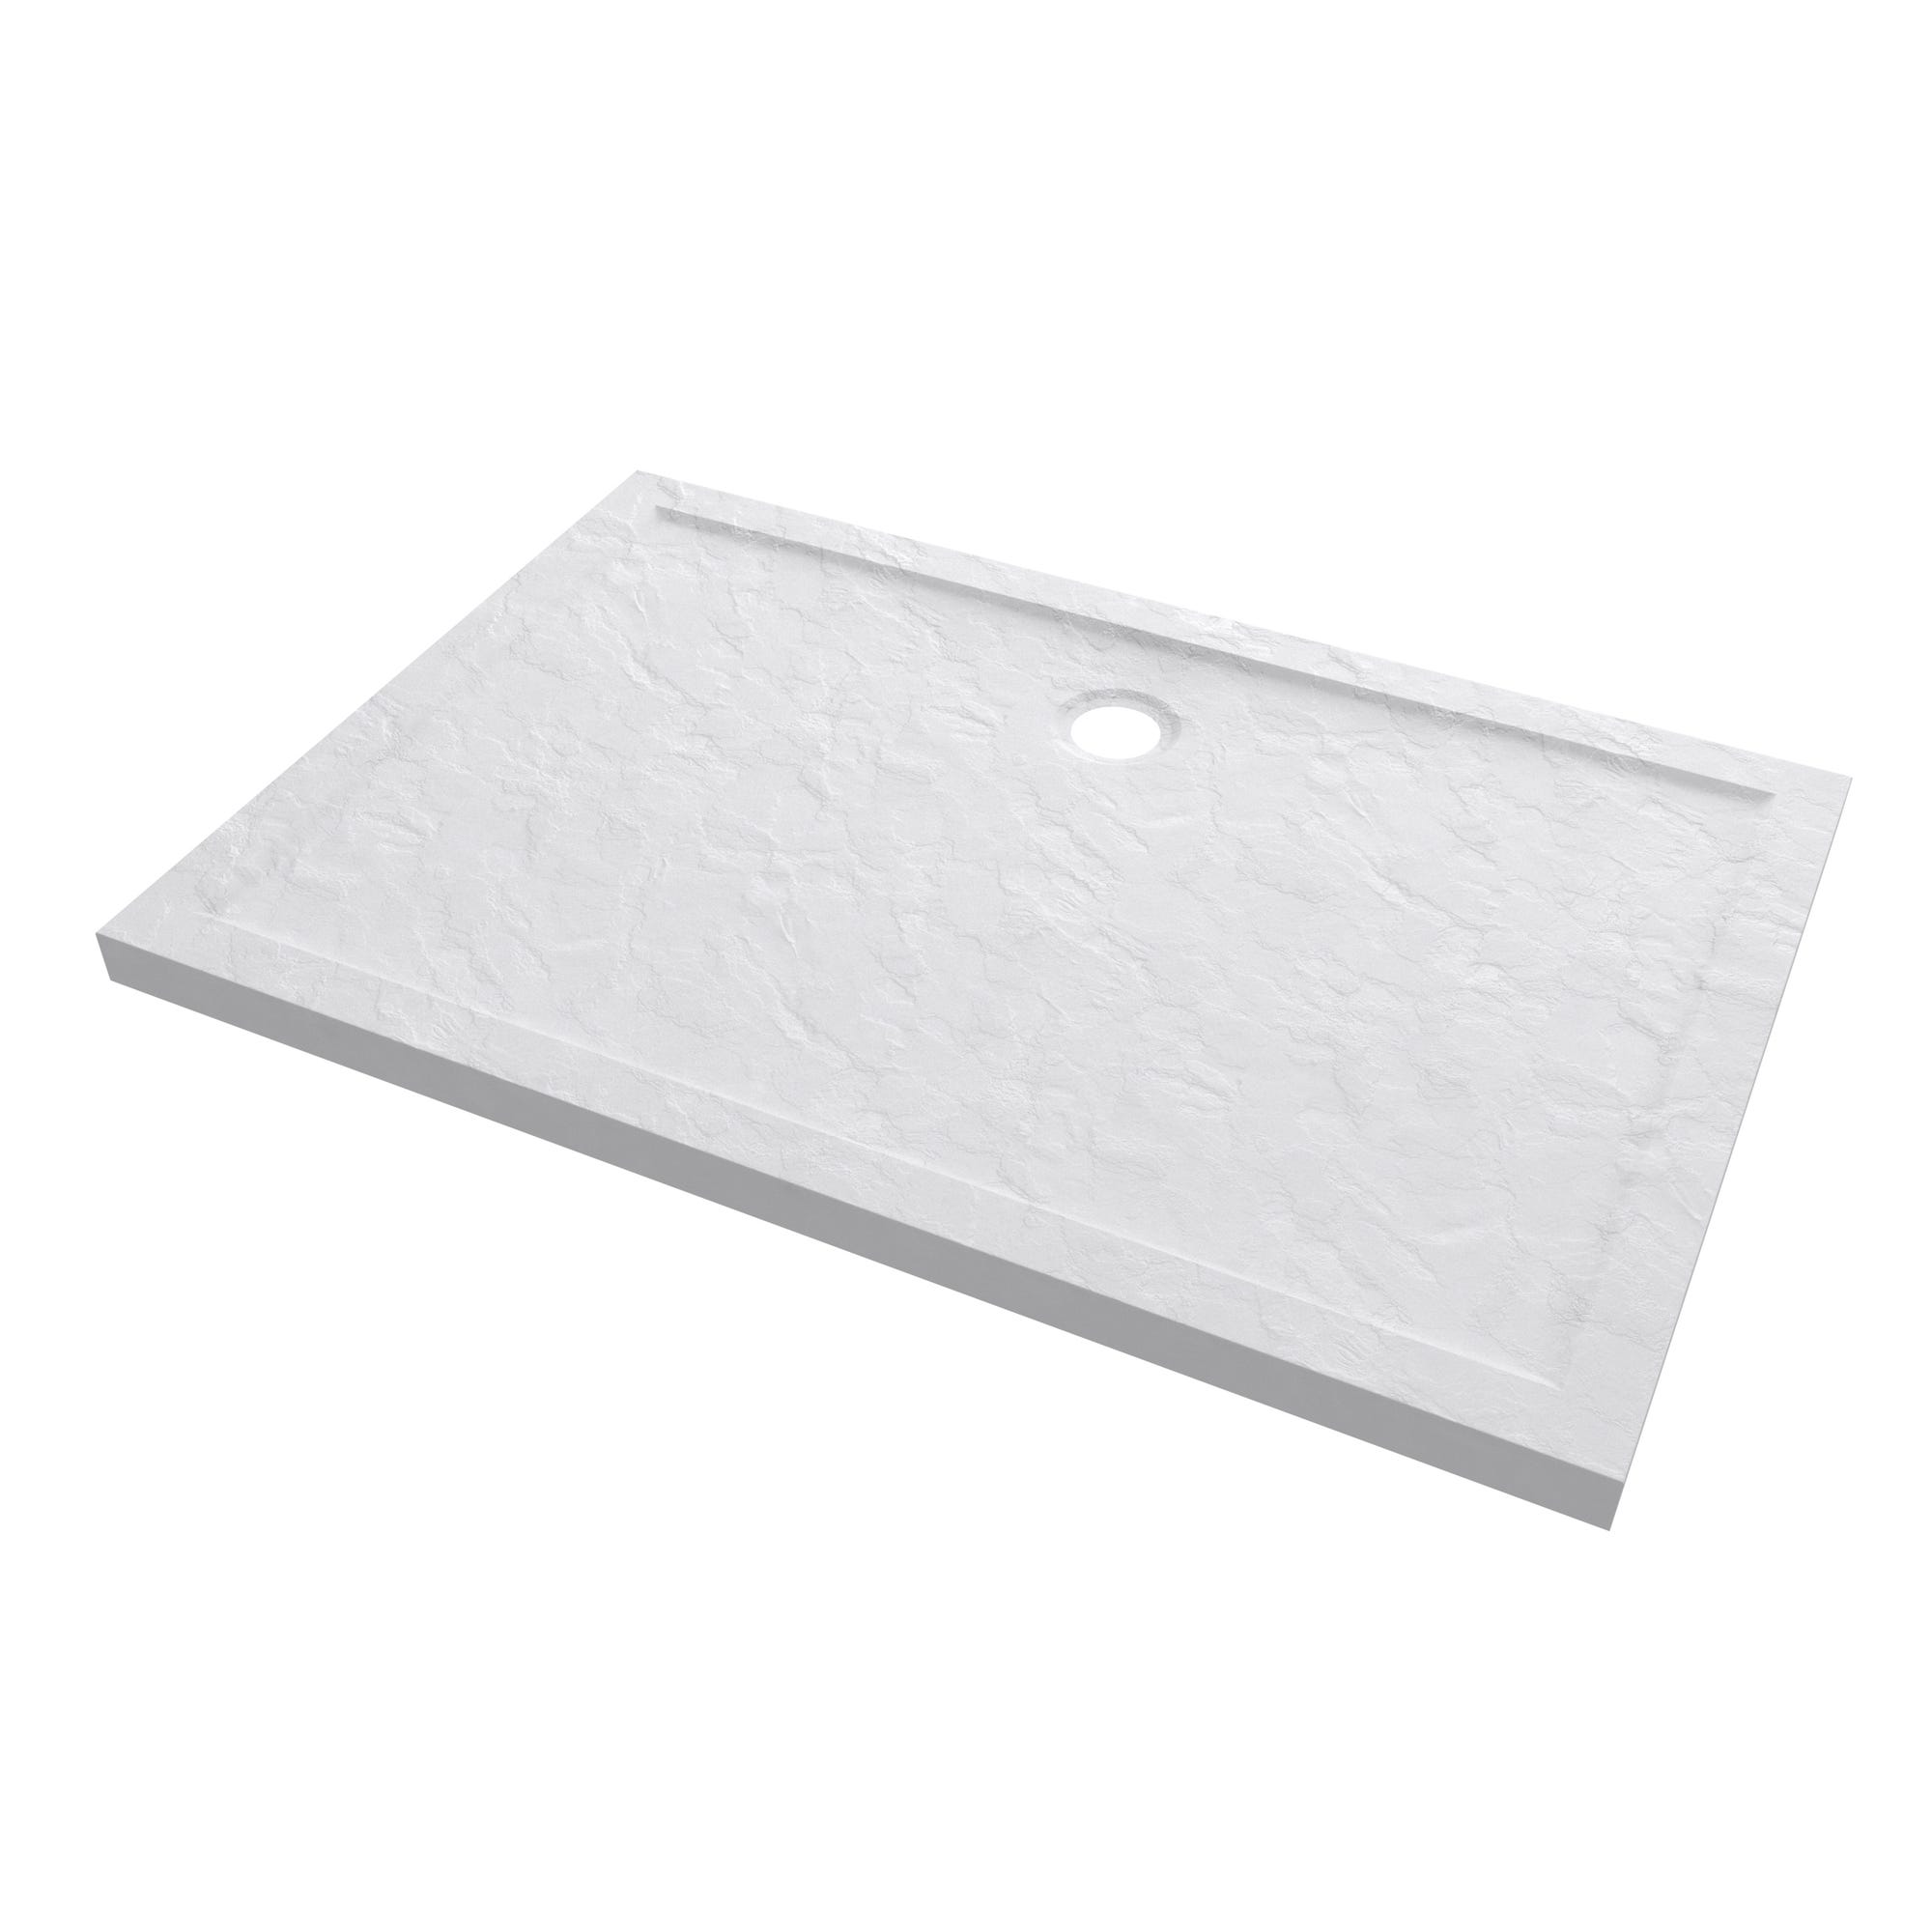 Receveur de douche a poser rectangle extra plat en acrylique renforcee blanc - finition pierre 2